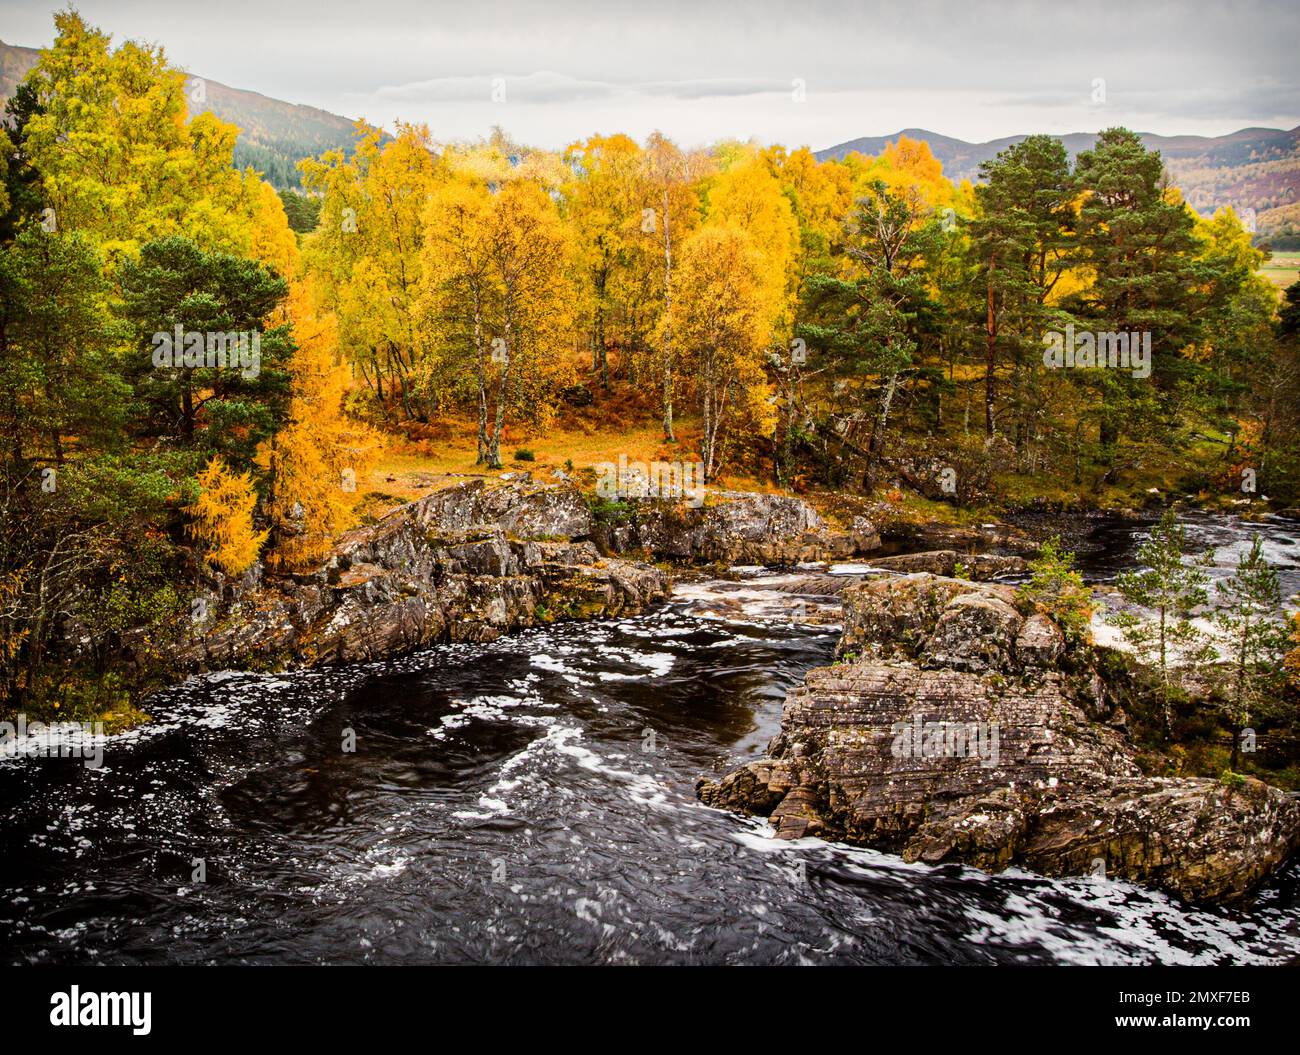 La rivière Black Water coule à travers le paysage autour de Little Garve dans les Highlands écossais en automne. Banque D'Images